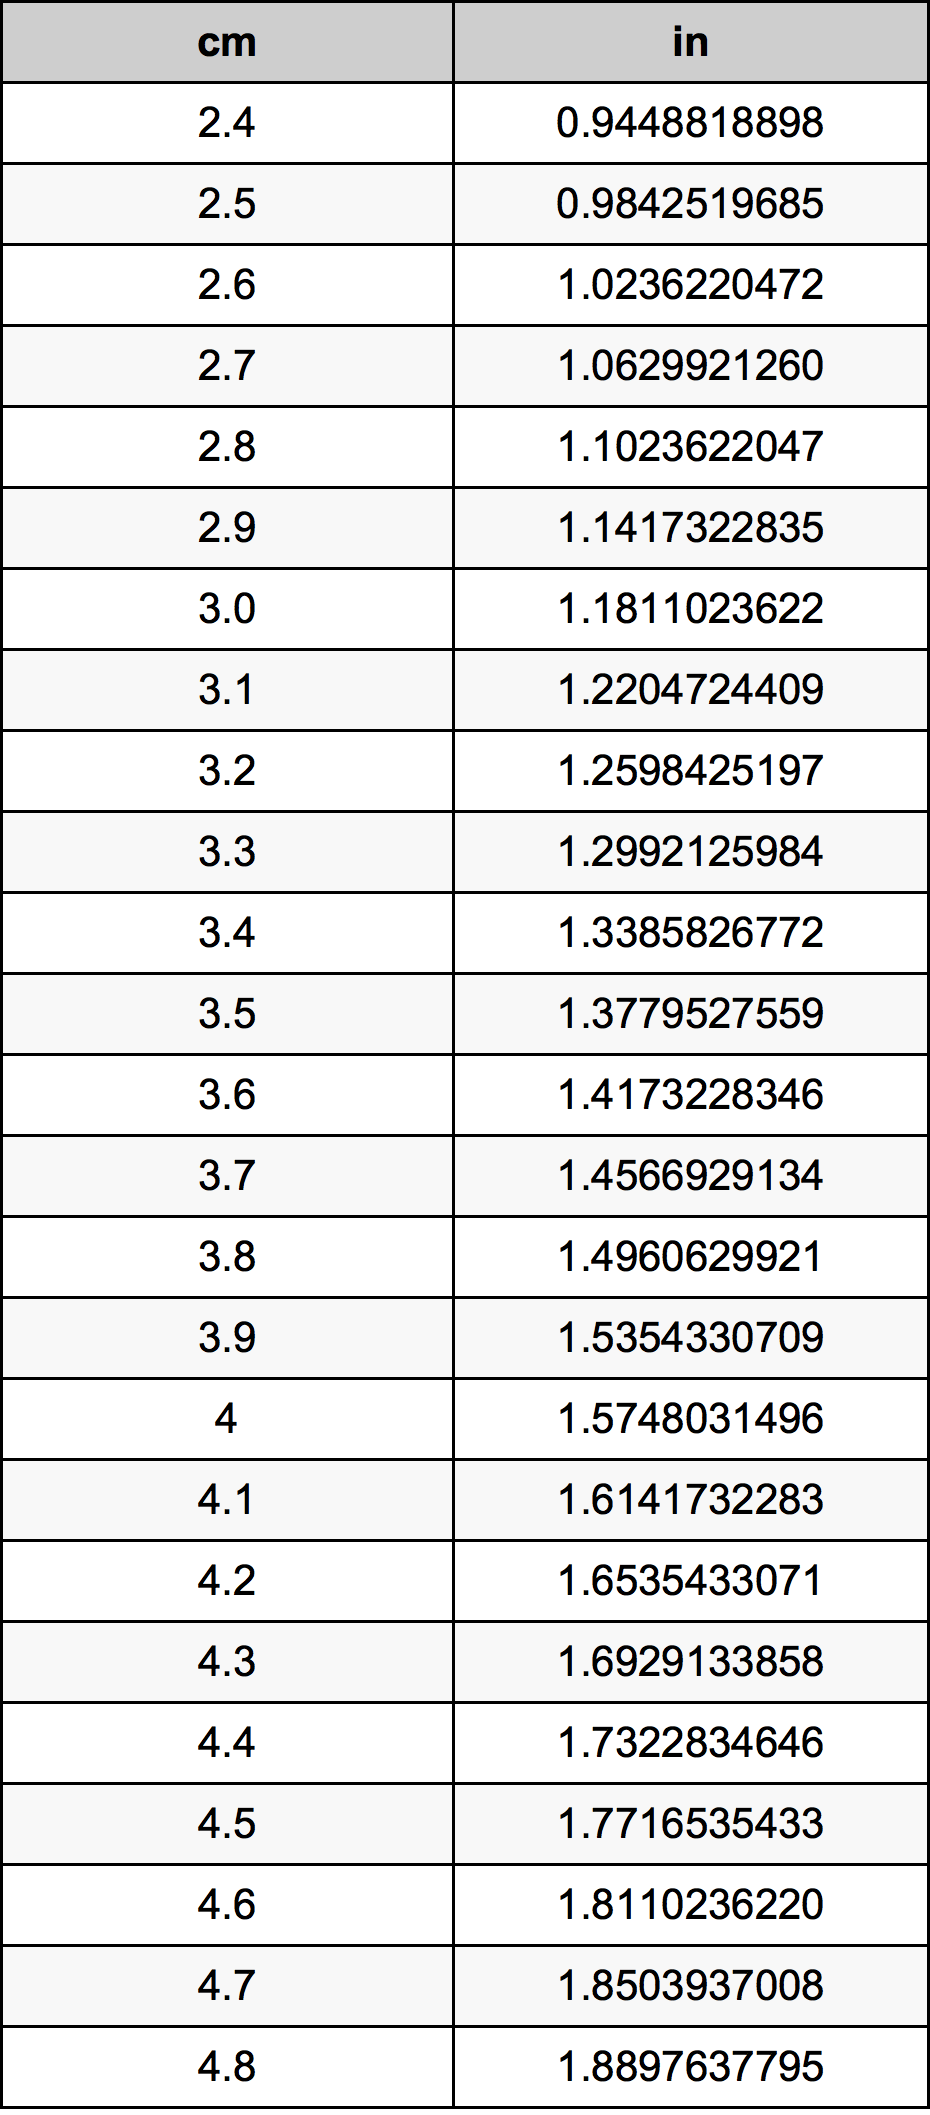 3.6 Centiméter átszámítási táblázat